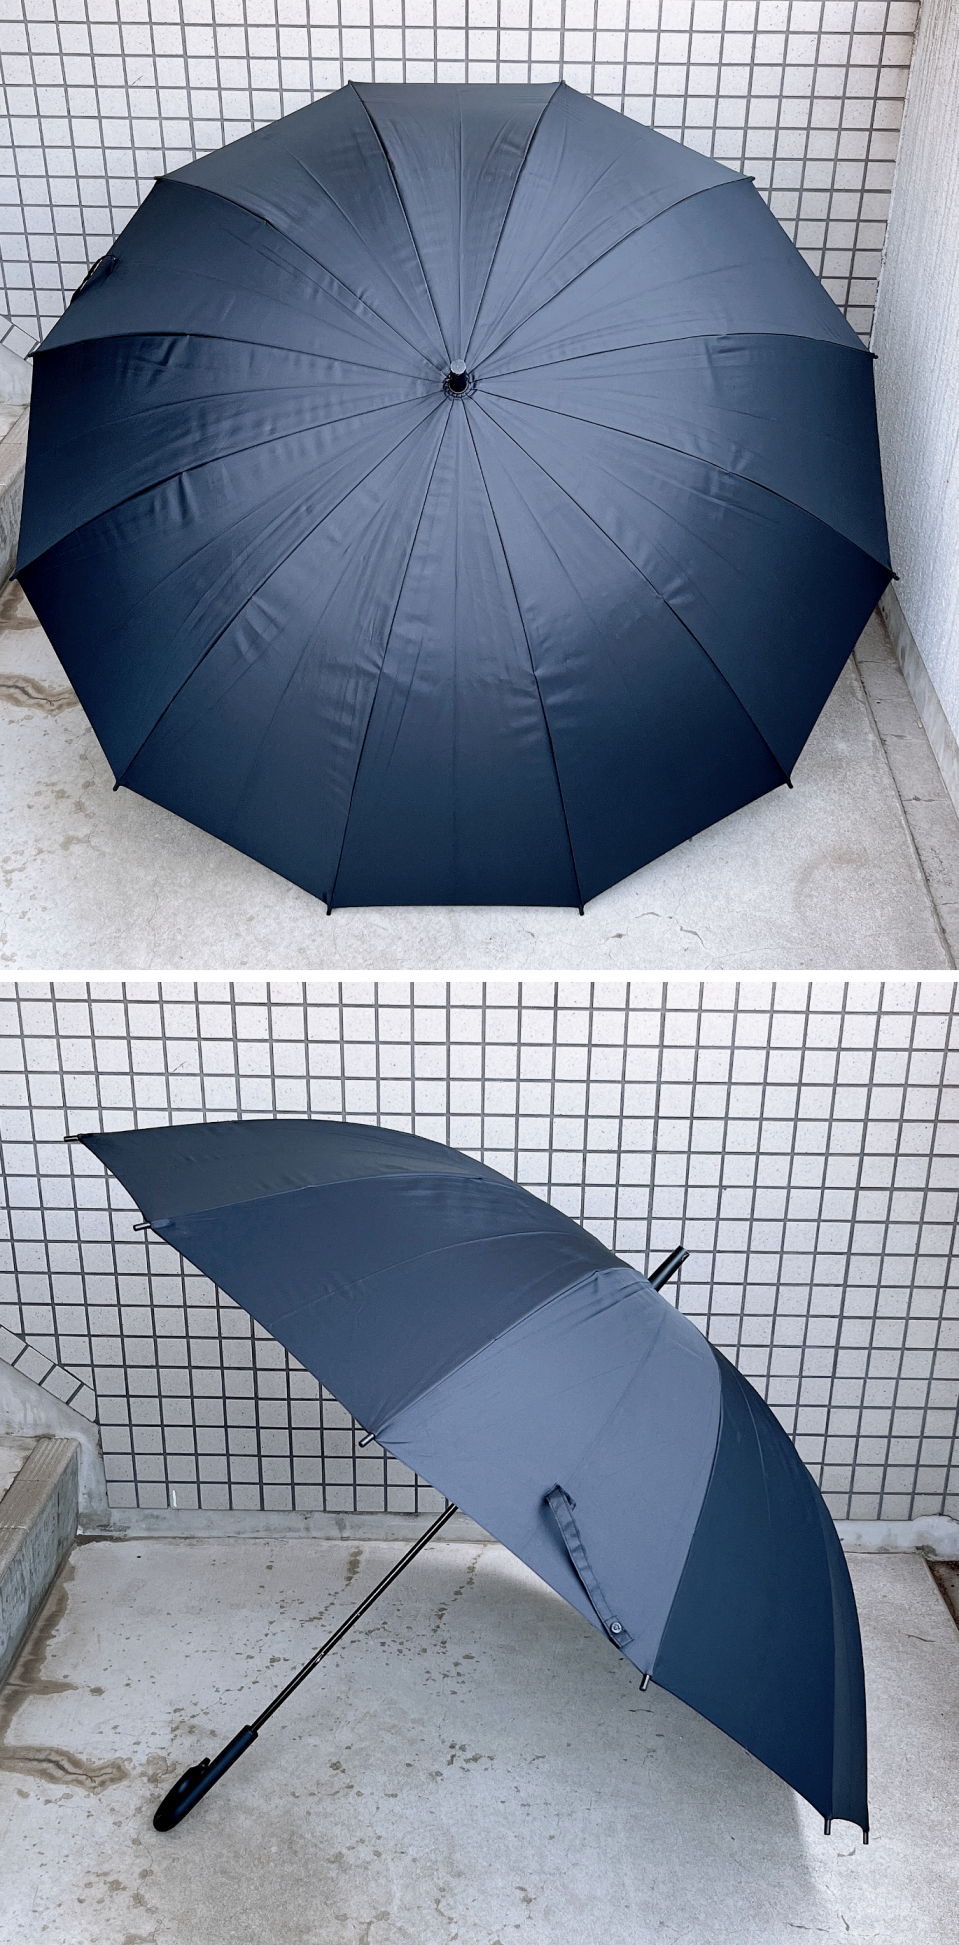 無印良品のおすすめ便利グッズ「しるしのつけられる 大きい傘 70cm」